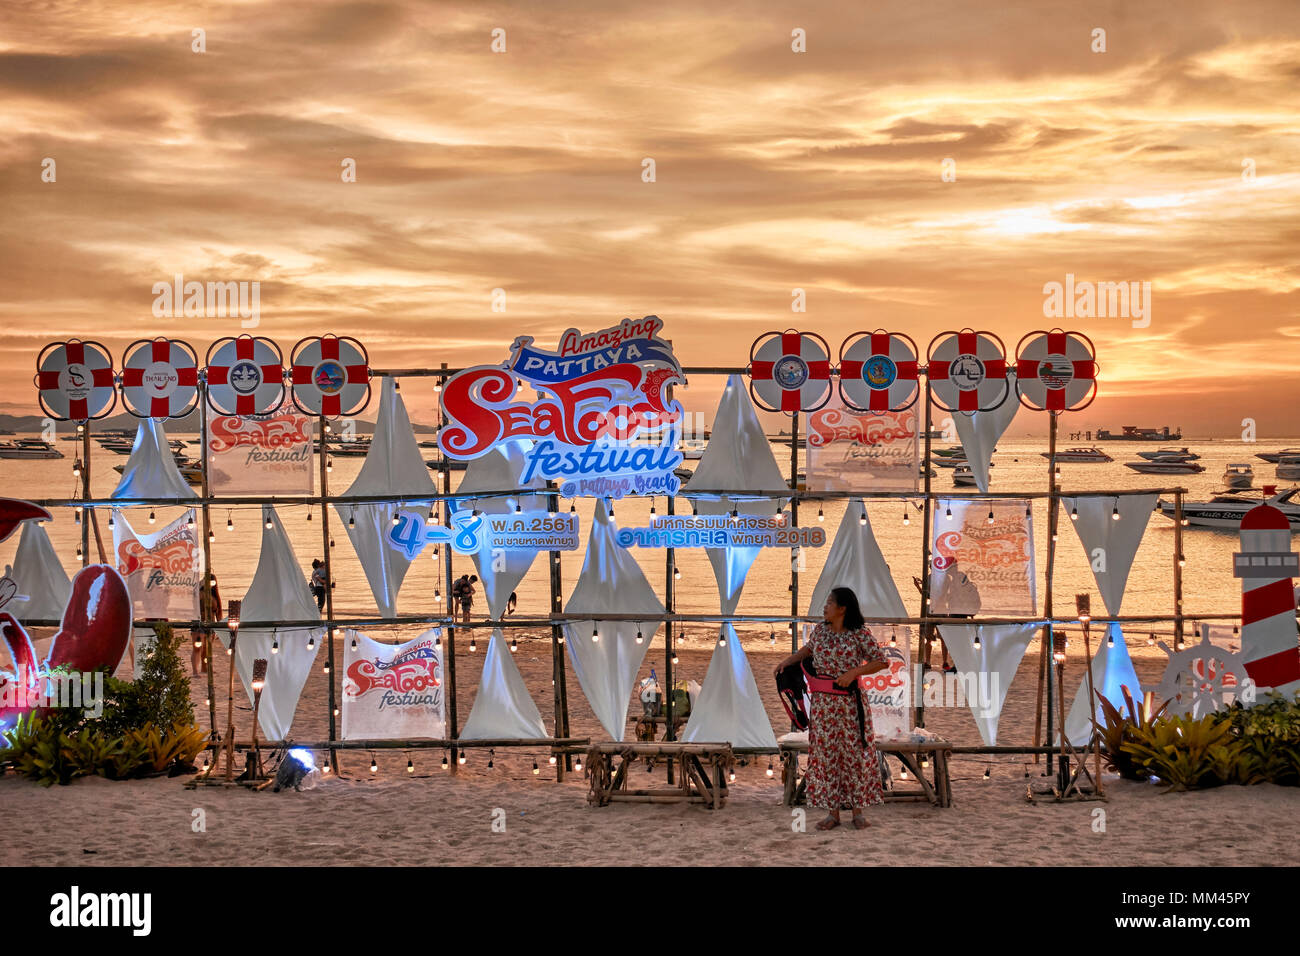 Tramonto sulla spiaggia di scena a Pattaya street food festival, Thailandia del sud-est asiatico Foto Stock